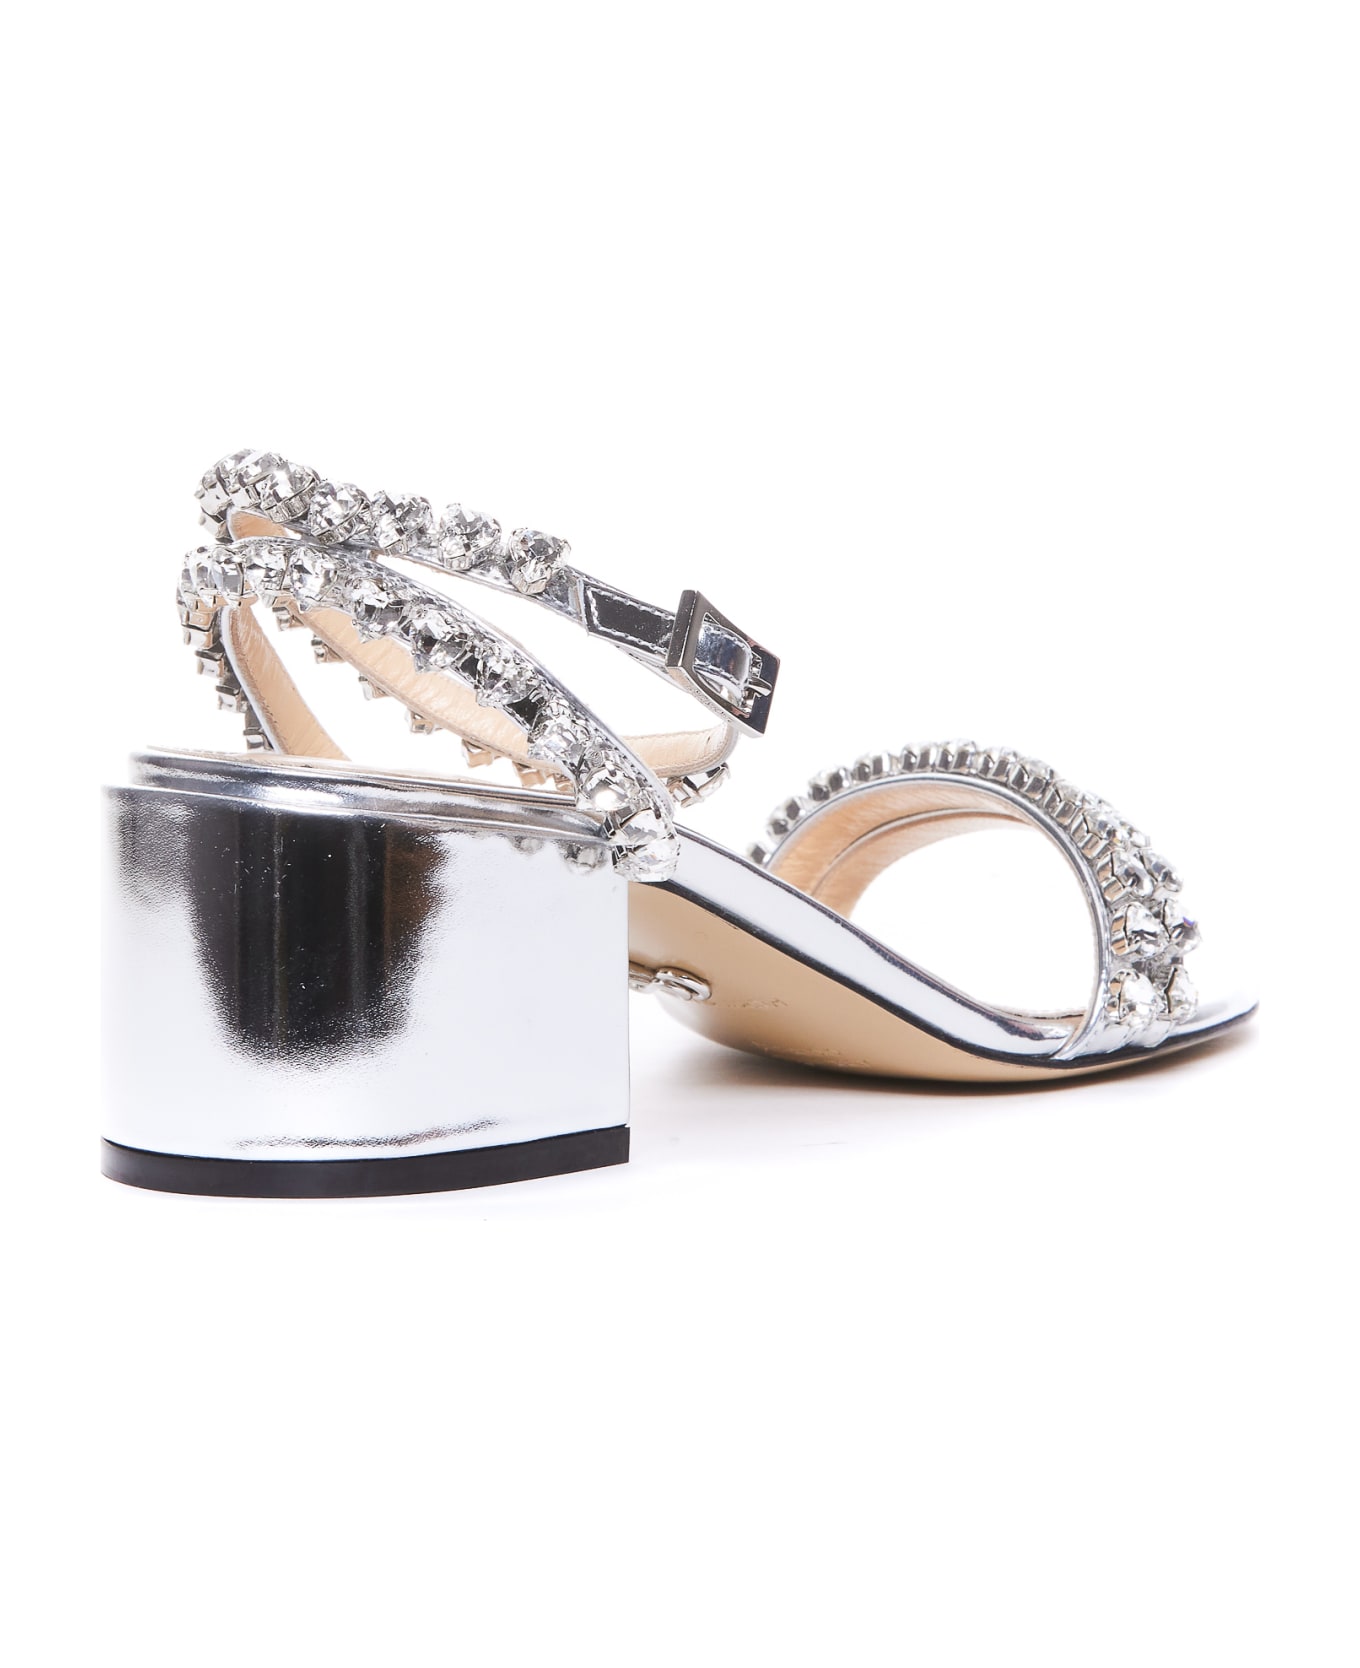 Mach & Mach Audrey Crystal Pump Sandals - Silver